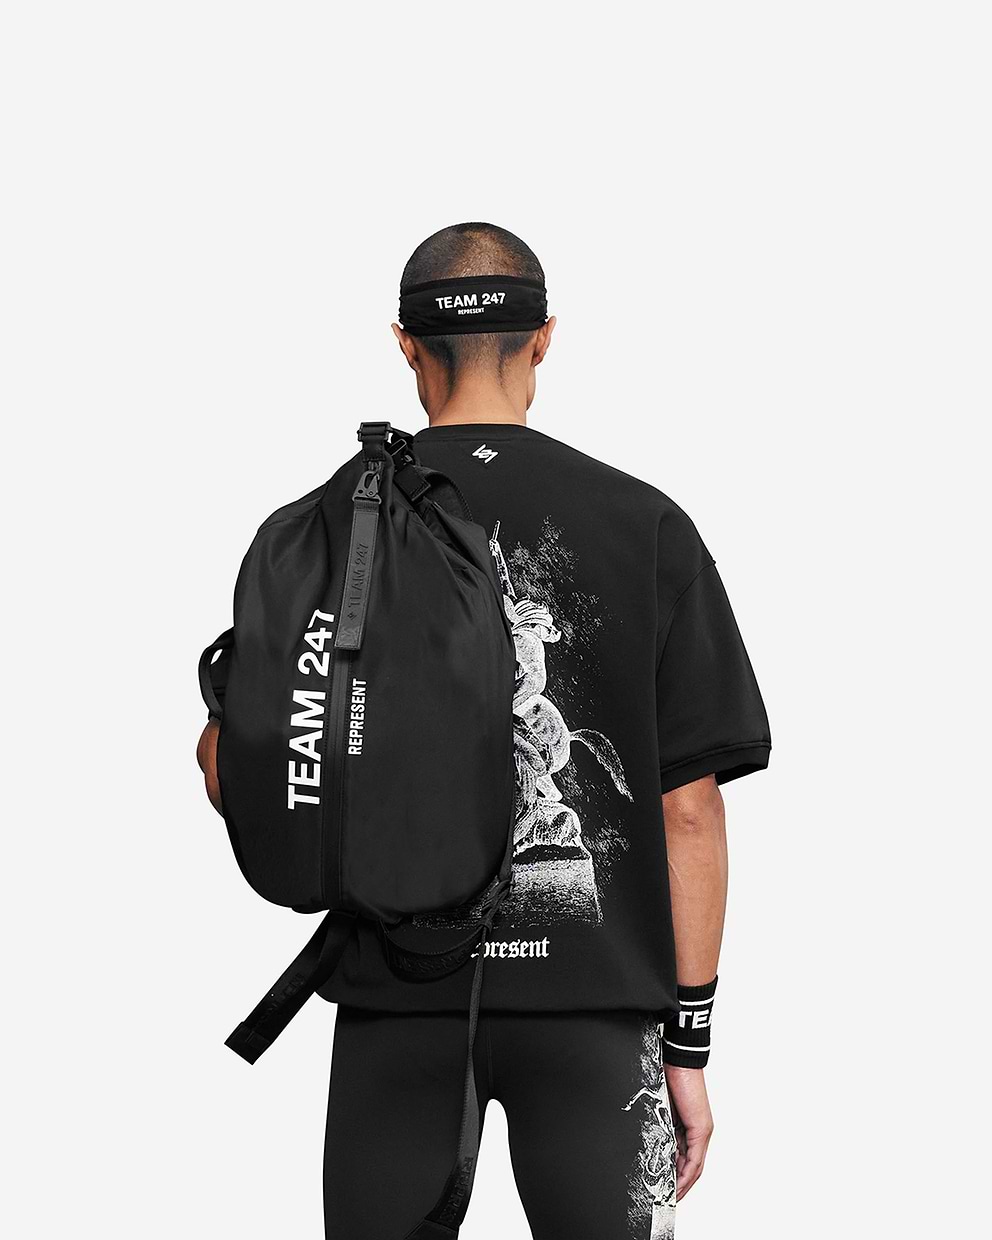 247 Backpack - Black